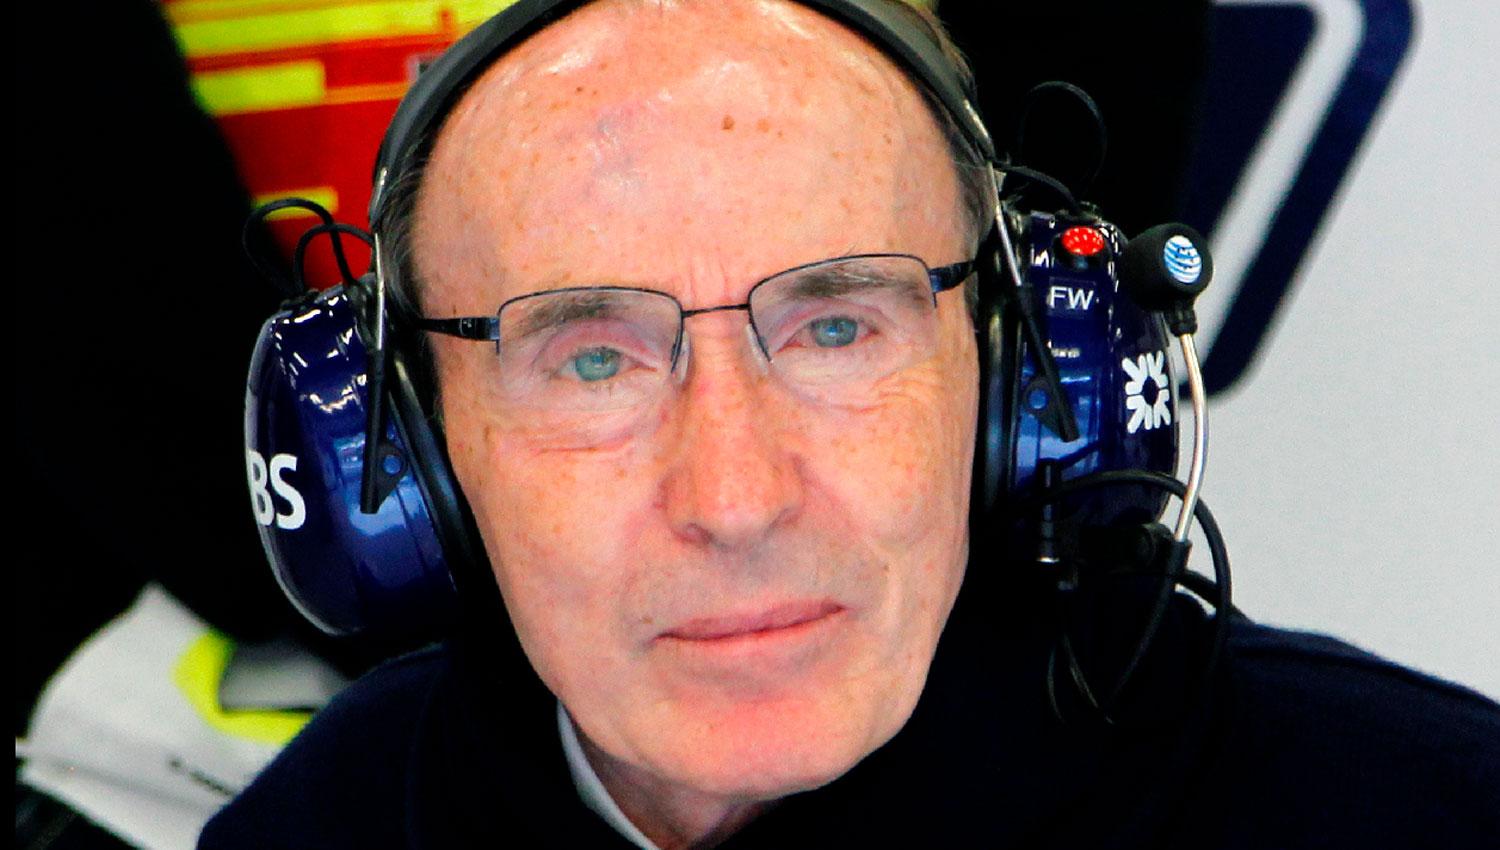 HISTÓRICO. Frank Williams fundó Williams Racing en 1977 y cosechó nueve títulos de constructores y siete de pilotos. 